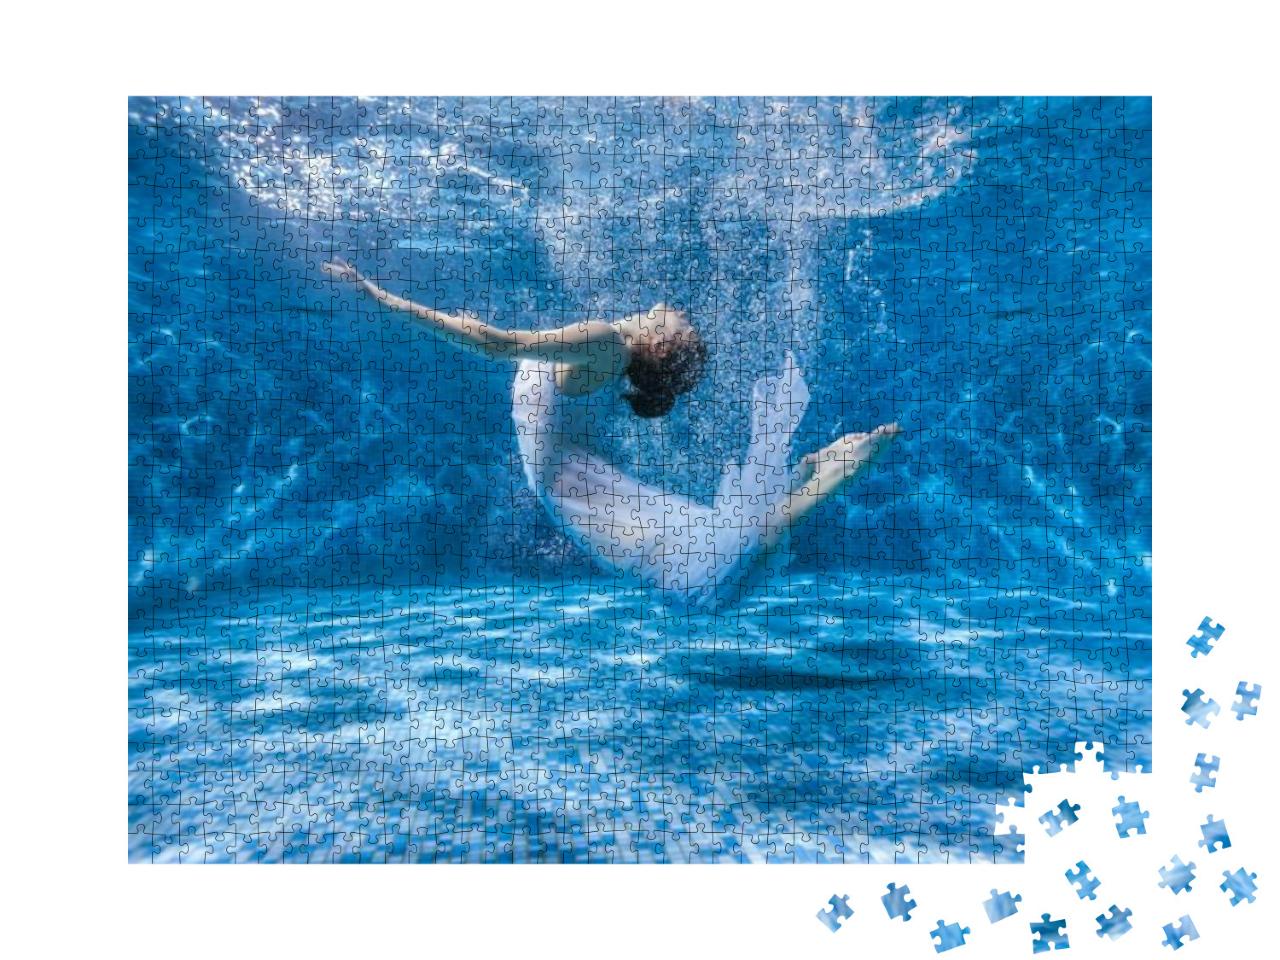 Puzzle 1000 Teile „Tanzende Frau unter Wasser“